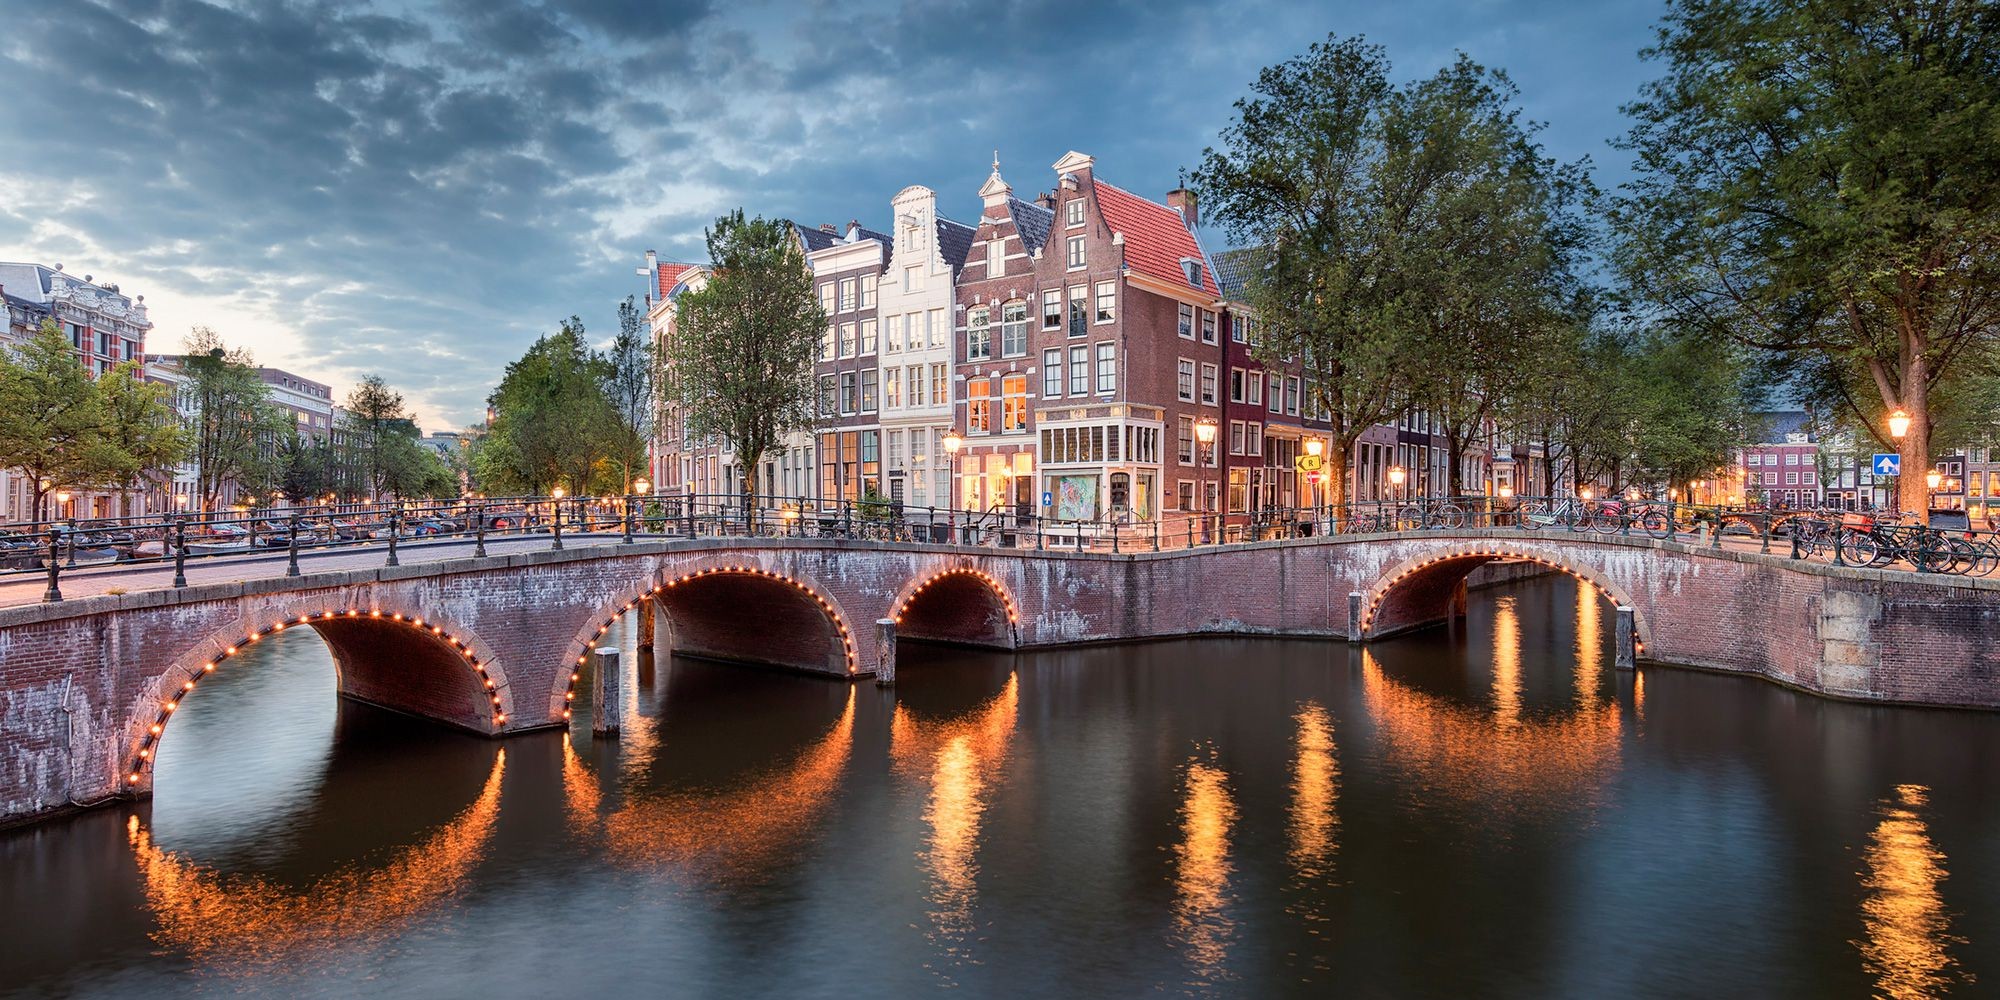 Du lịch Amsterdam cùng những khám phá tuyệt vời nhất định phải thử